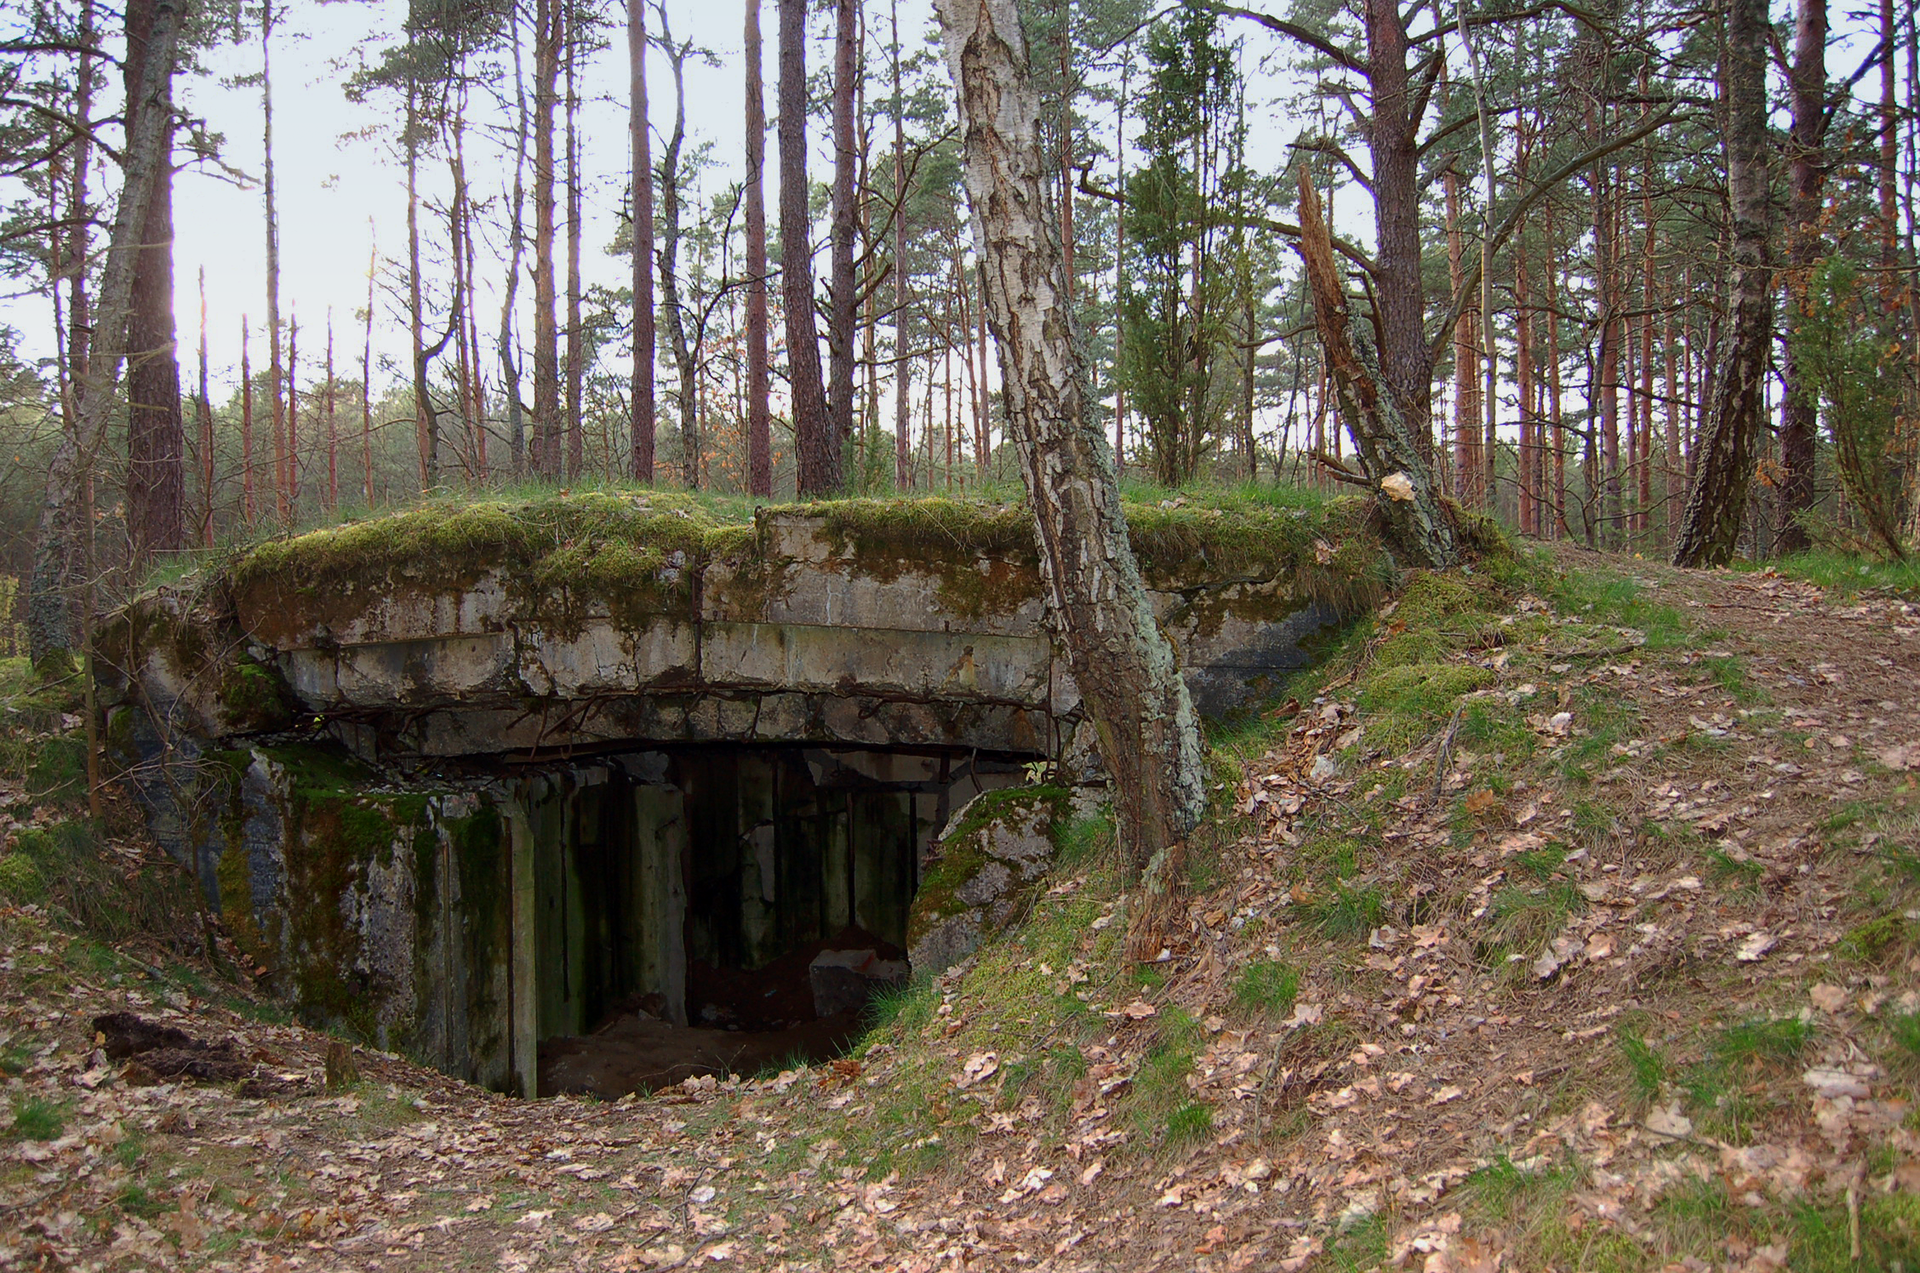 Zdjęcie przedstawiające stary bunkier z okresu drugiej wojny światowej, ukryty w lesie.